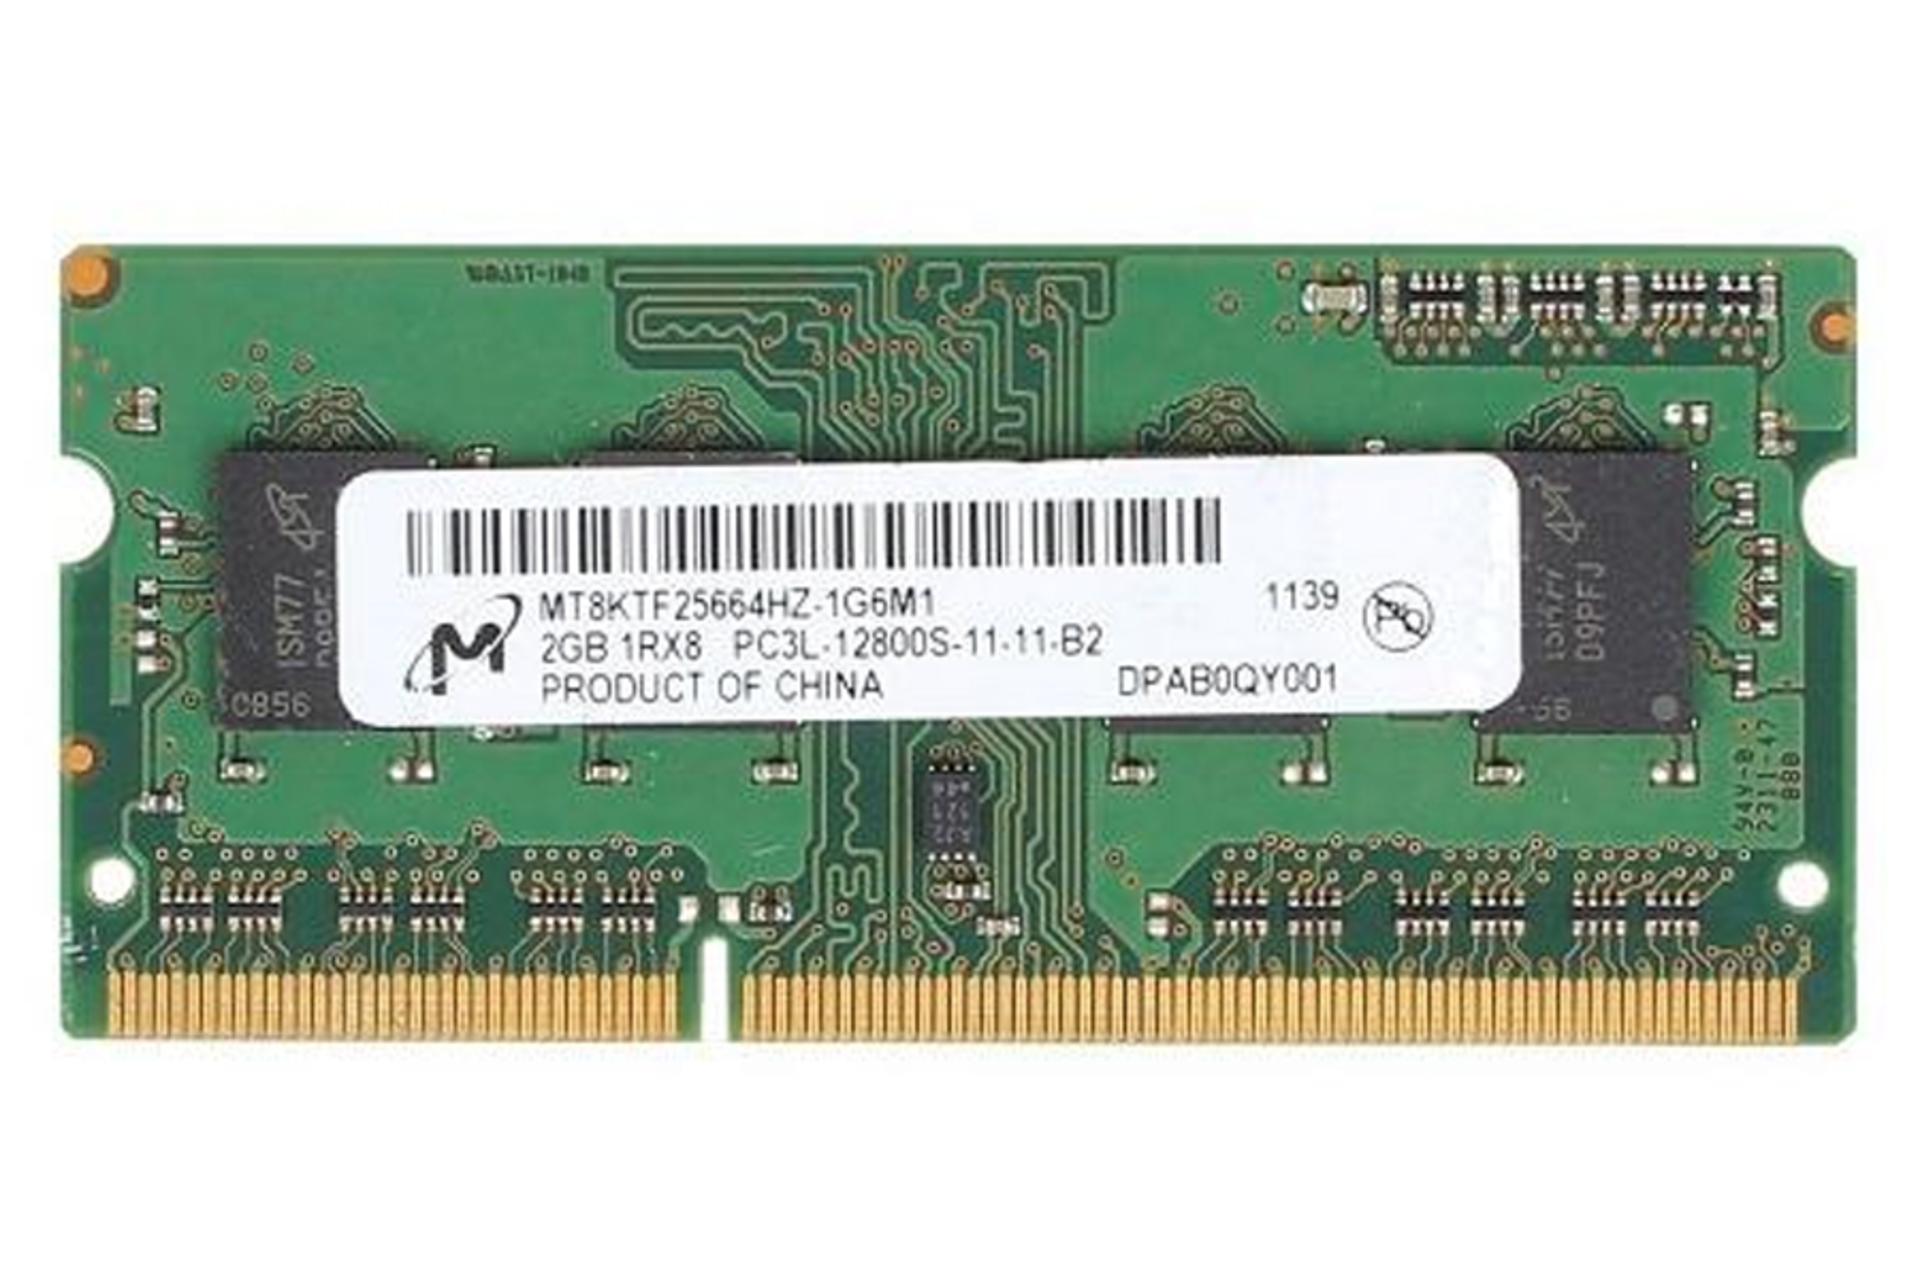 رم مایکرون MT8KTF25664HZ-1G6M1 ظرفیت 2 گیگابایت از نوع DDR3L-1600